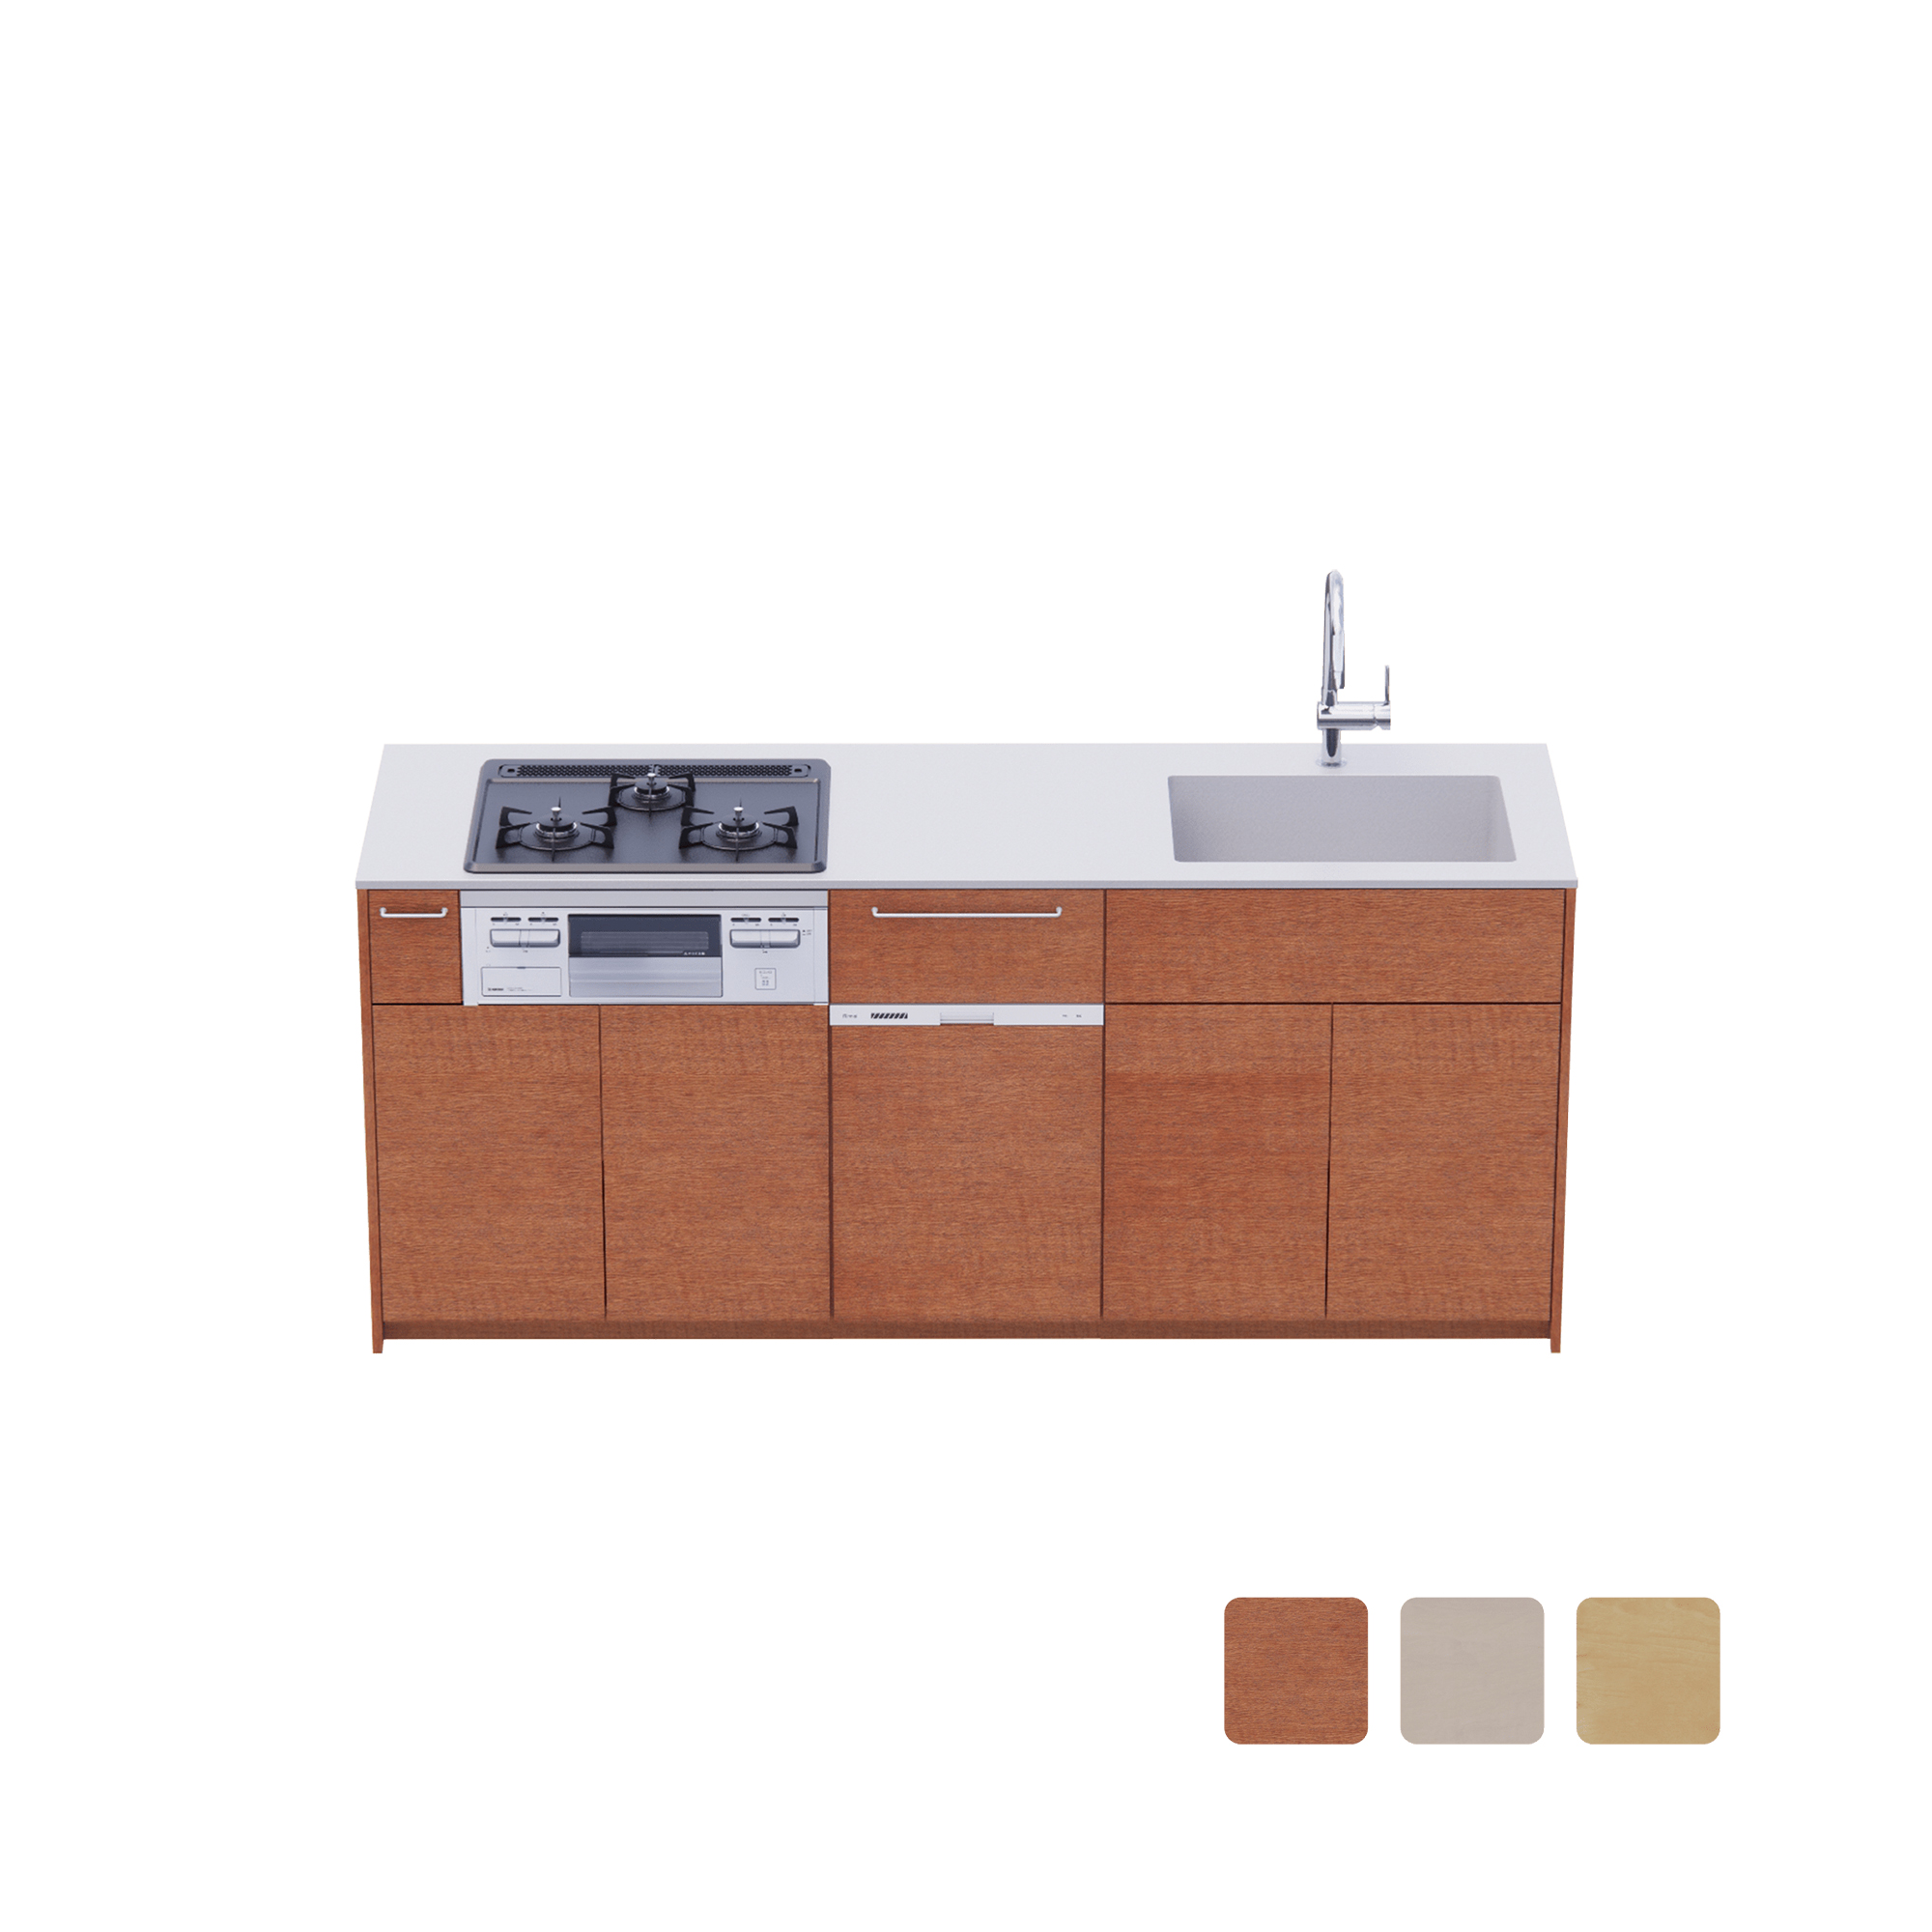 木製システムキッチン 壁付け型 W1990・コンロあり / オーブンなし / 食洗機あり KB-KC022-15-G183 壁付け型 W1990　※ 別売り品の水栓・コンロ・食洗機を設置した時のイメージです